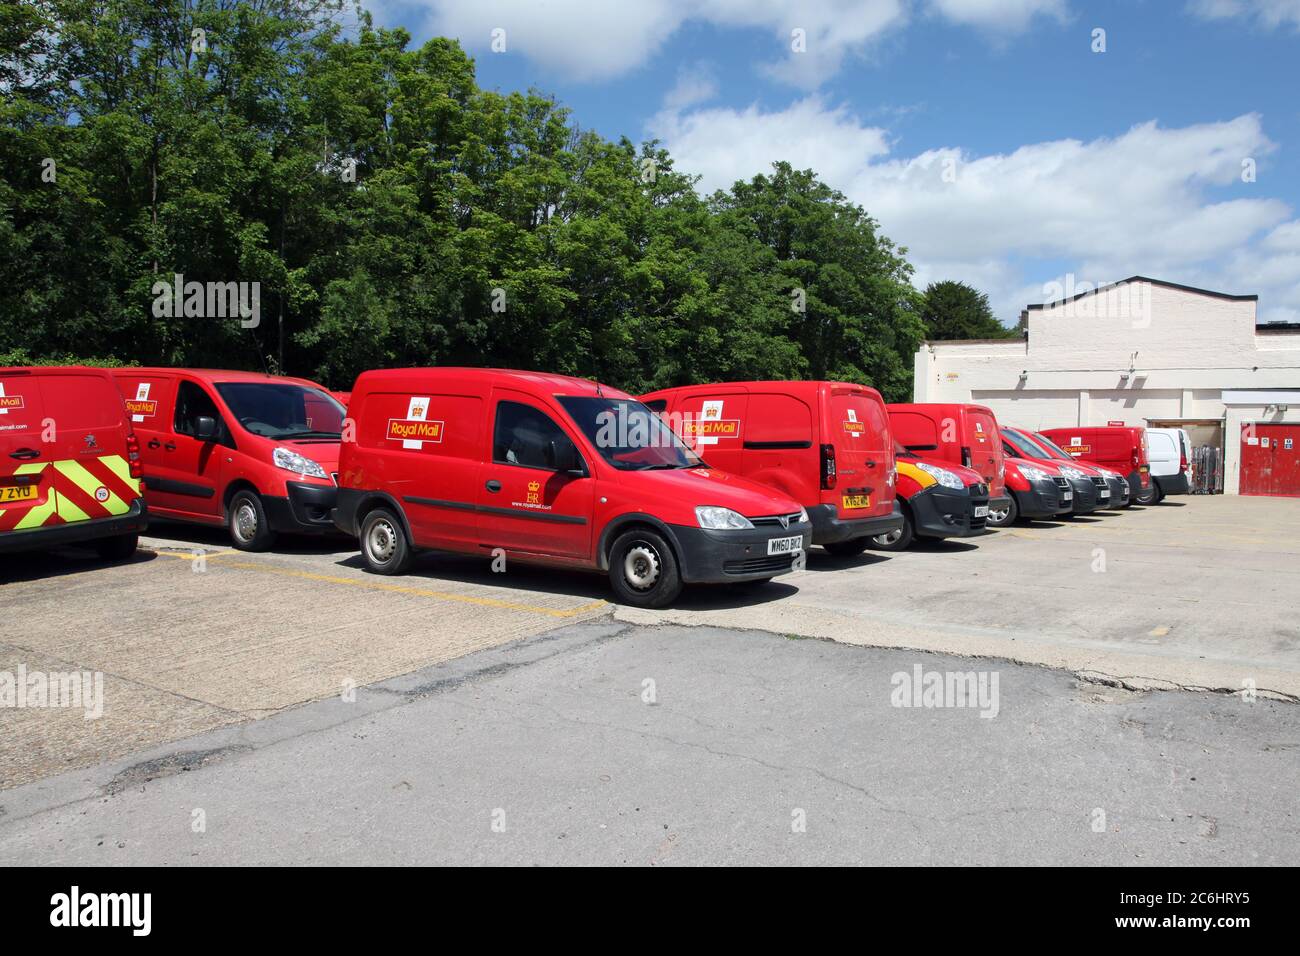 Les fourgonnettes de livraison Royal Mail garées au bureau de tri de Leatherhead, à Leatherhead, Surrey, Royaume-Uni, printemps 2020 Banque D'Images